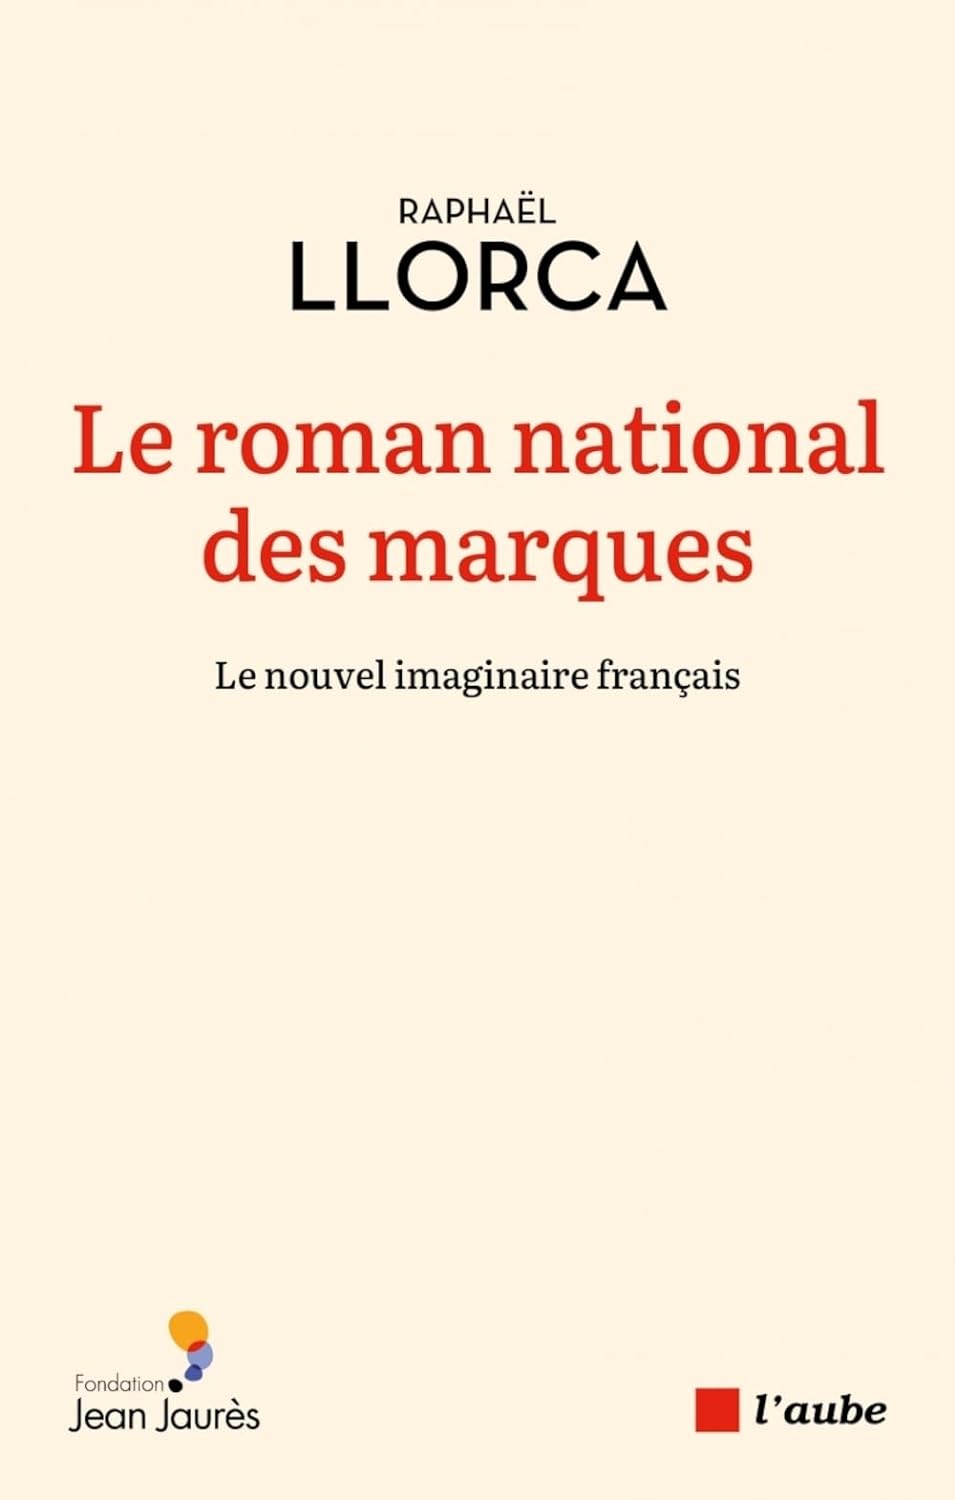 Raphaël Llorca_Le roman national des marques